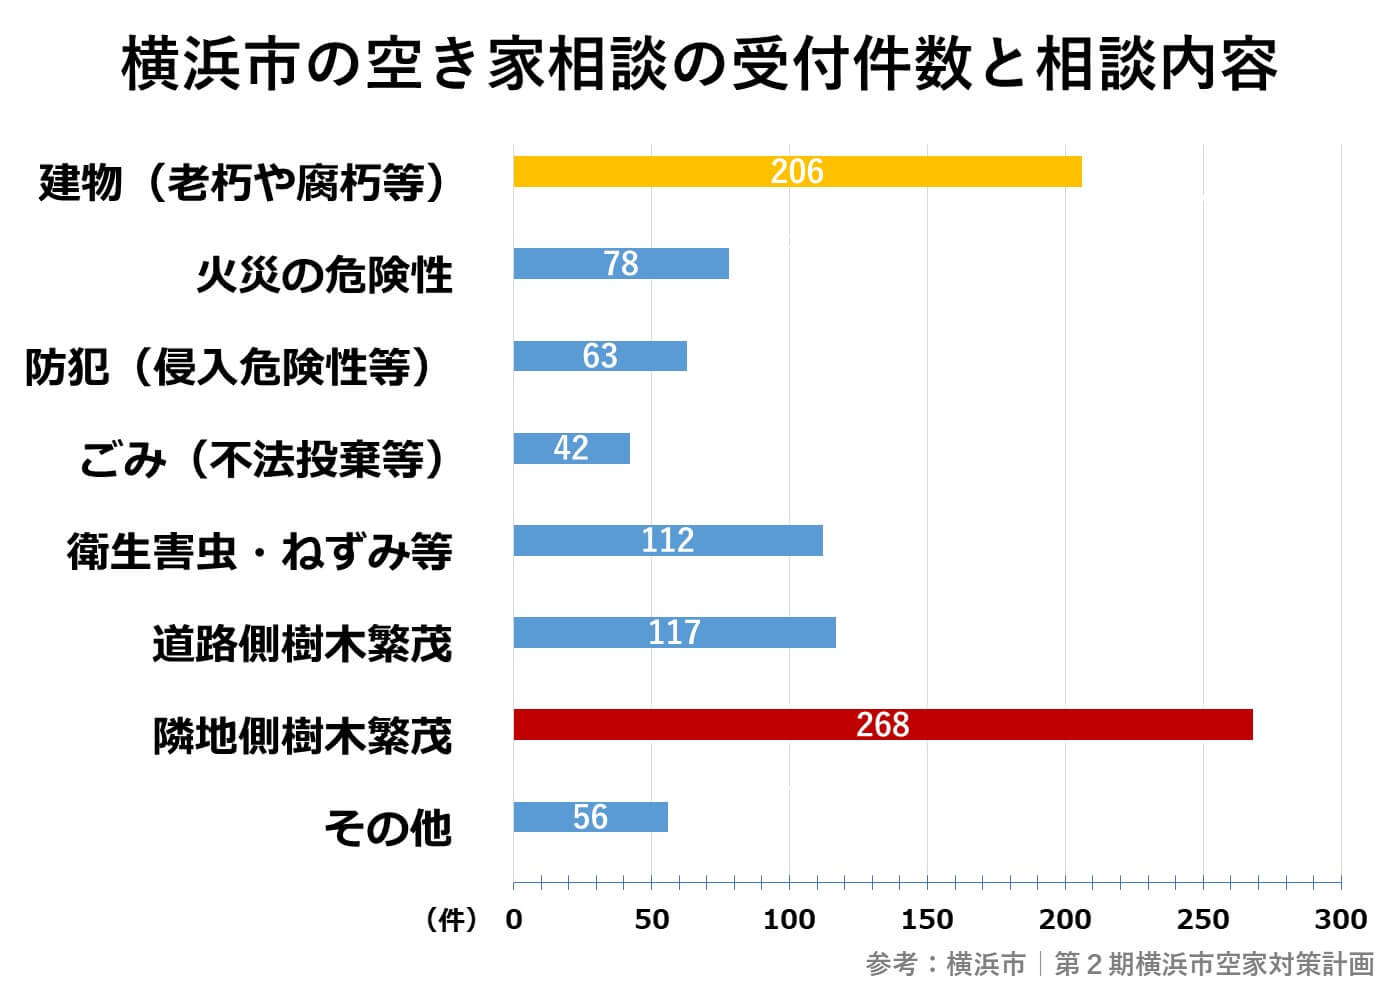 横浜市の空き家相談の受付件数と相談内容